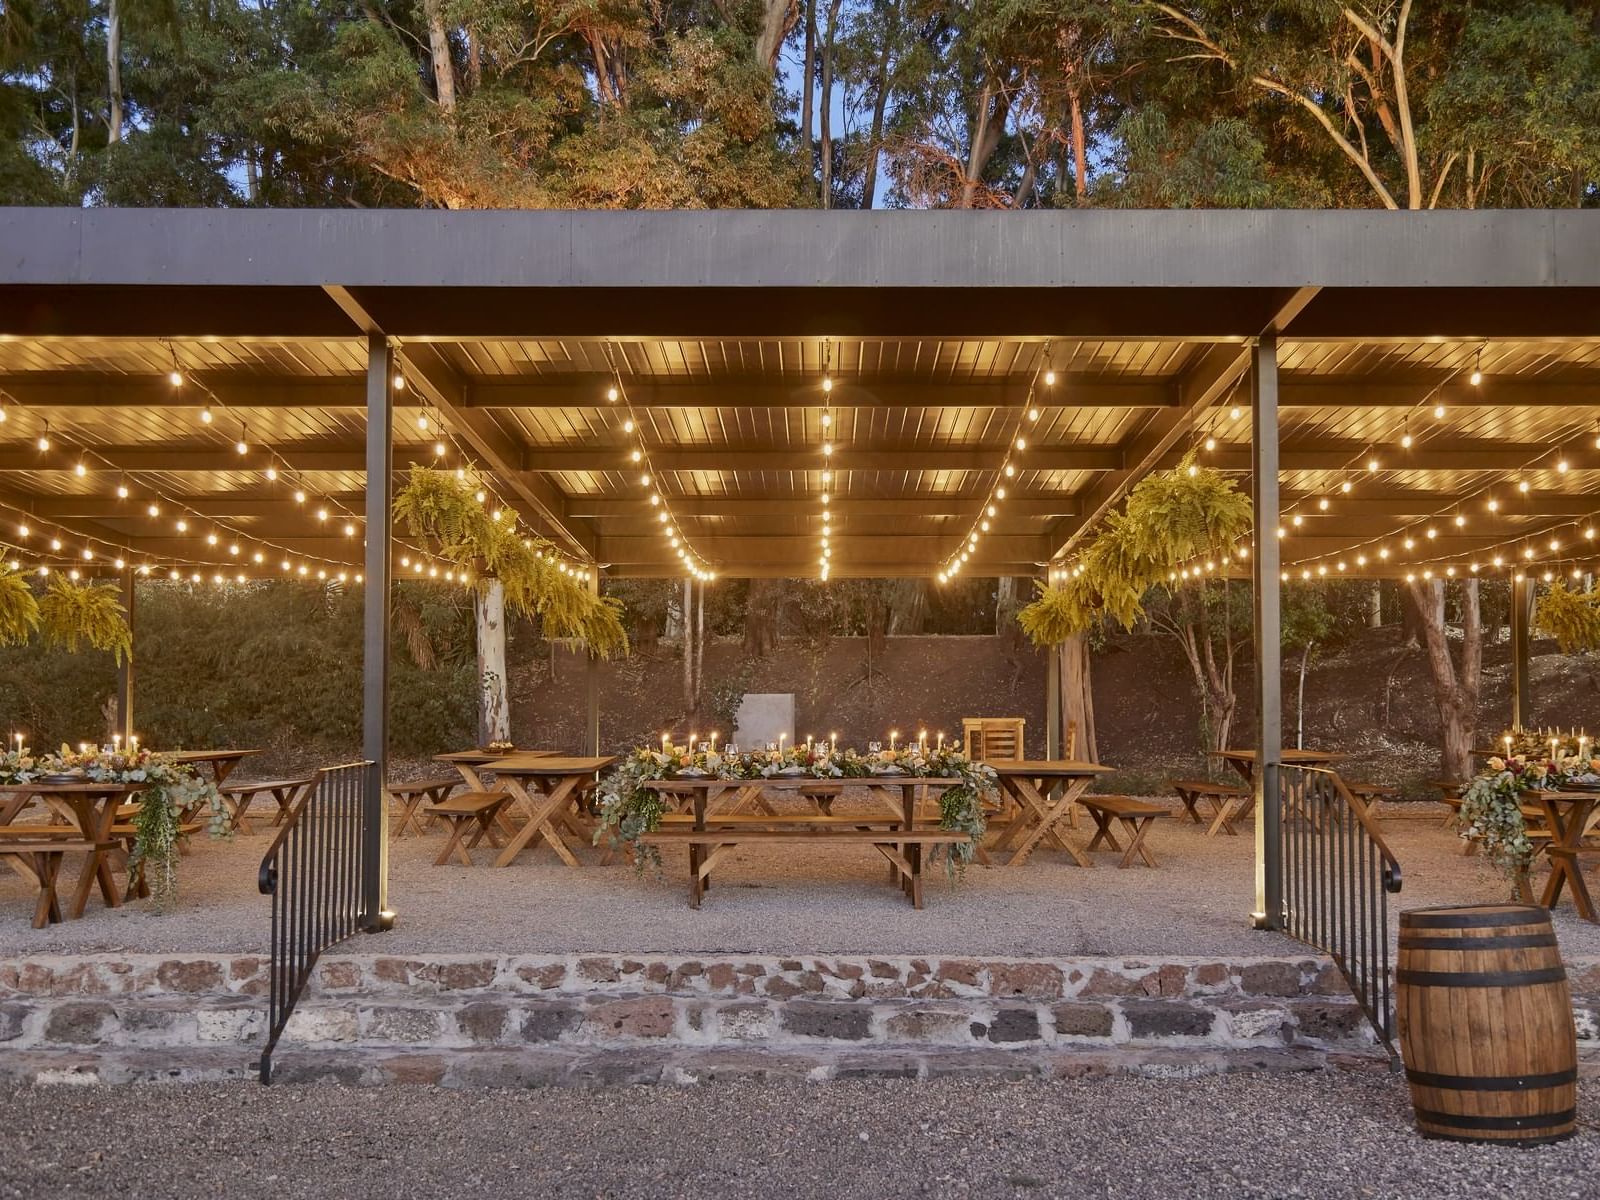 Open & airy dining area with decors, La Terraza, La Colección